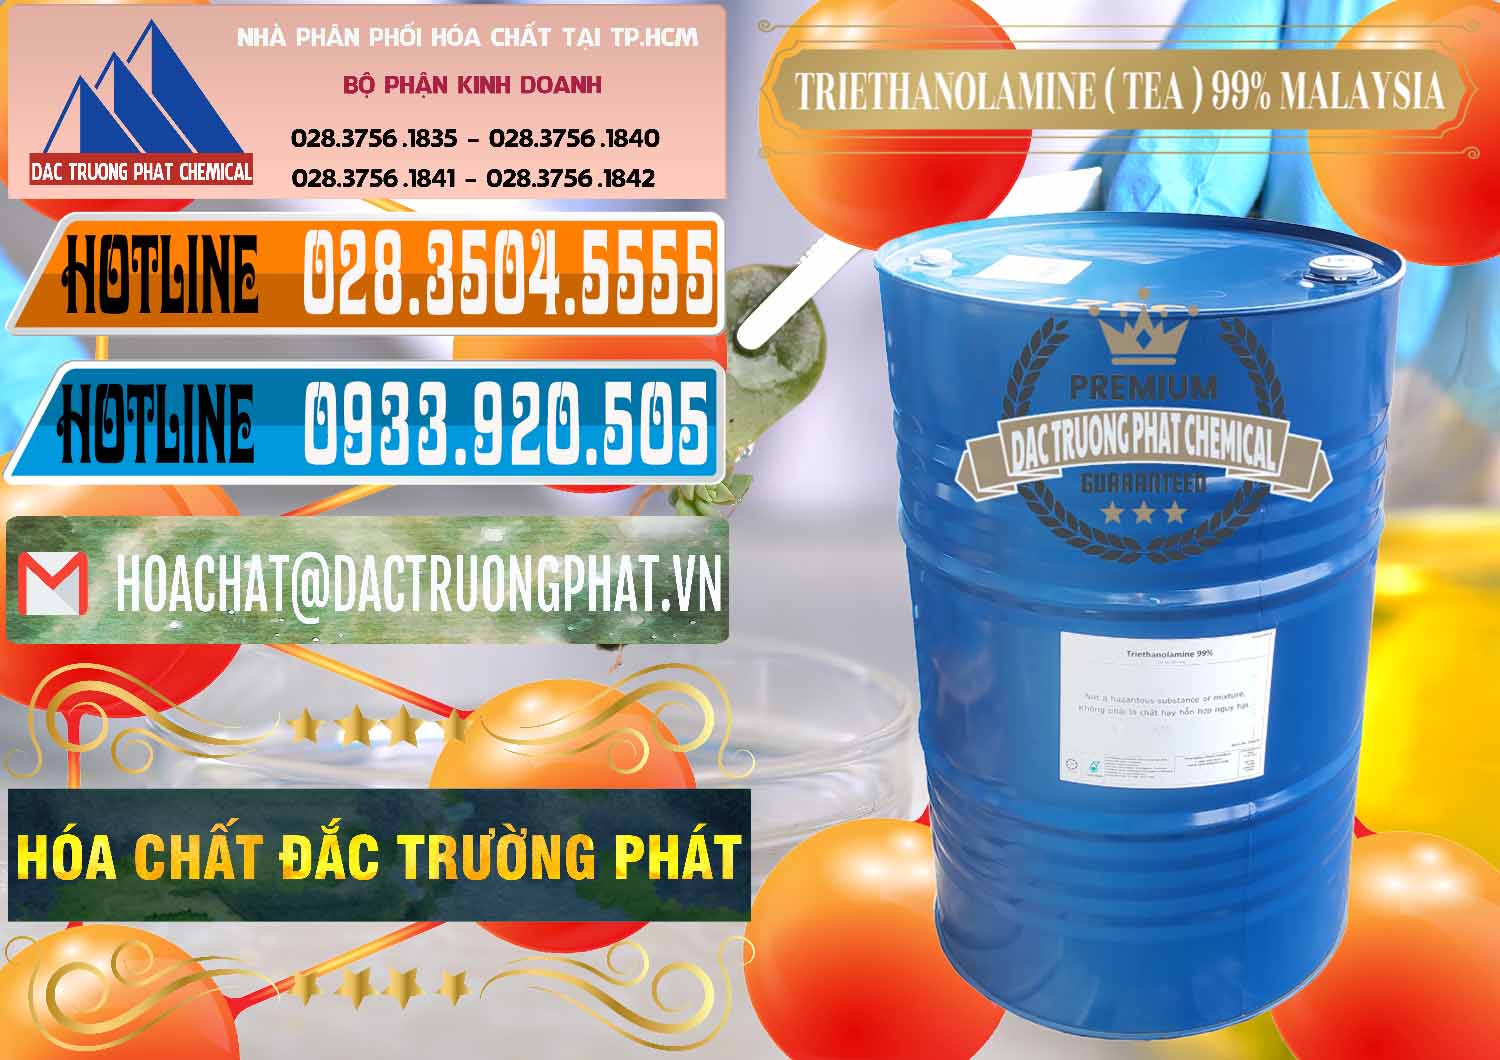 Nơi cung cấp & bán TEA - Triethanolamine 99% Mã Lai Malaysia - 0323 - Công ty chuyên bán và cung cấp hóa chất tại TP.HCM - stmp.net